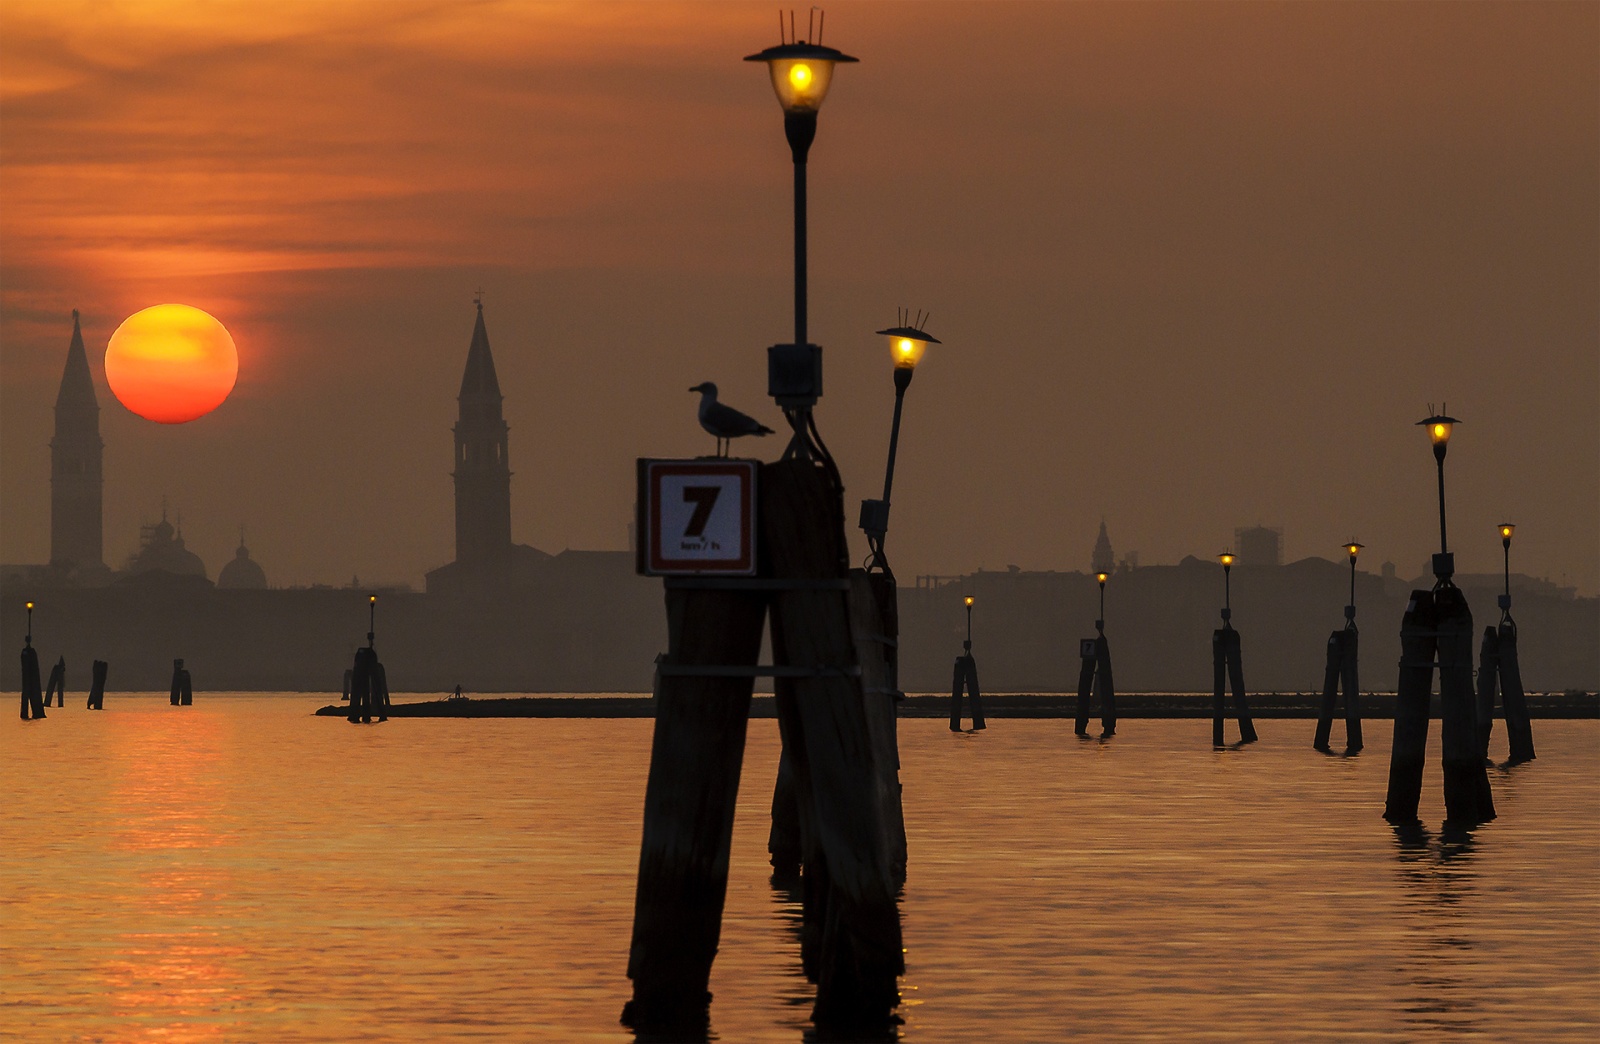 Venice lagoon, Italy 2012